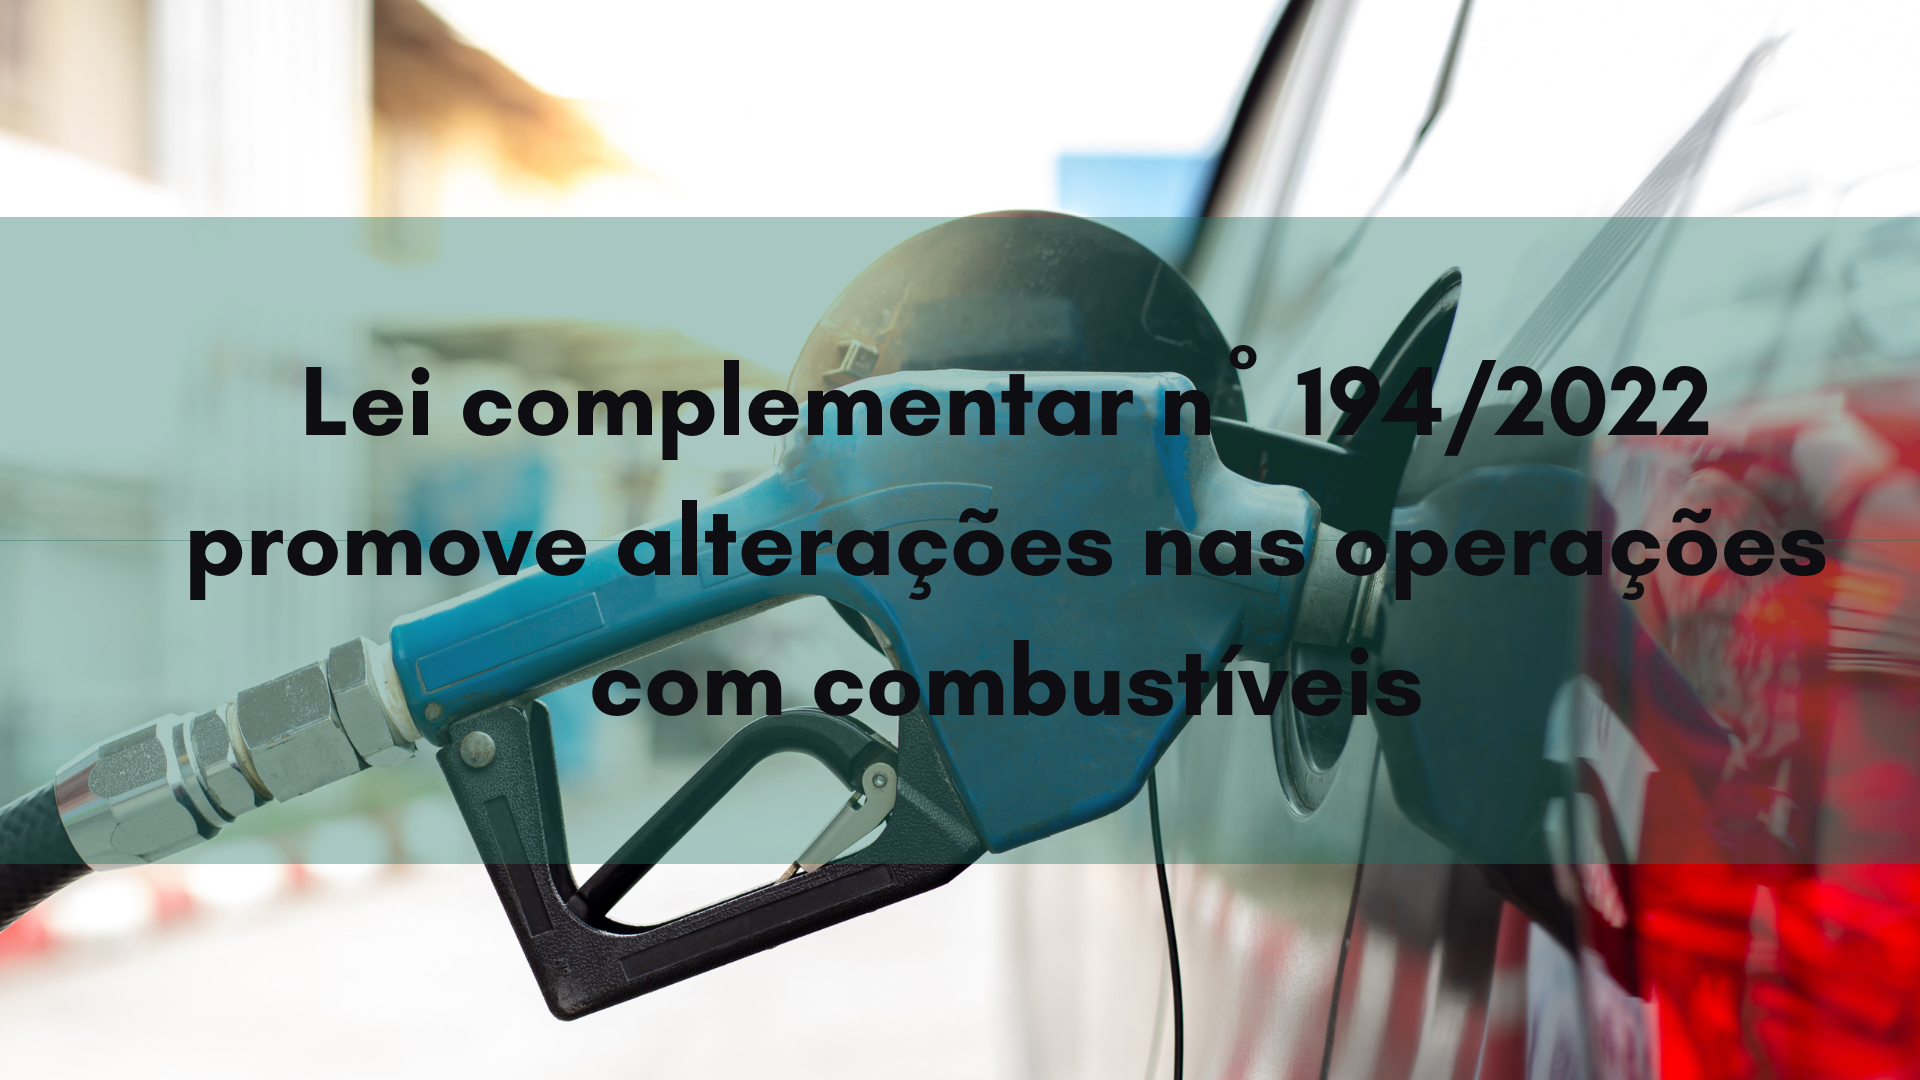 Lei complementar nº 194/2022 promove alterações nas operações com combustíveis